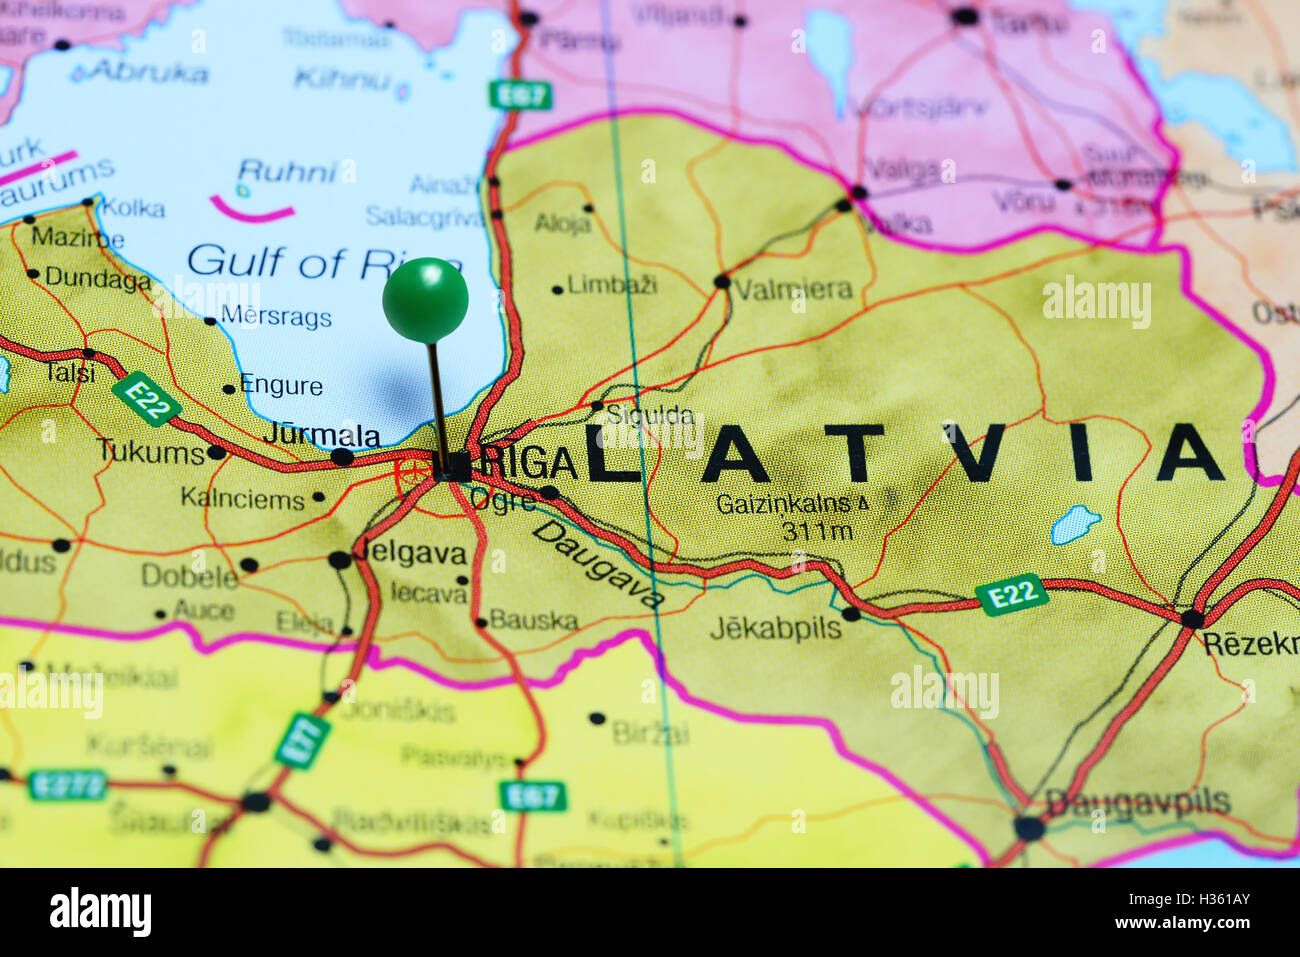 Riga pinned on a map of Latvia Stock Photo